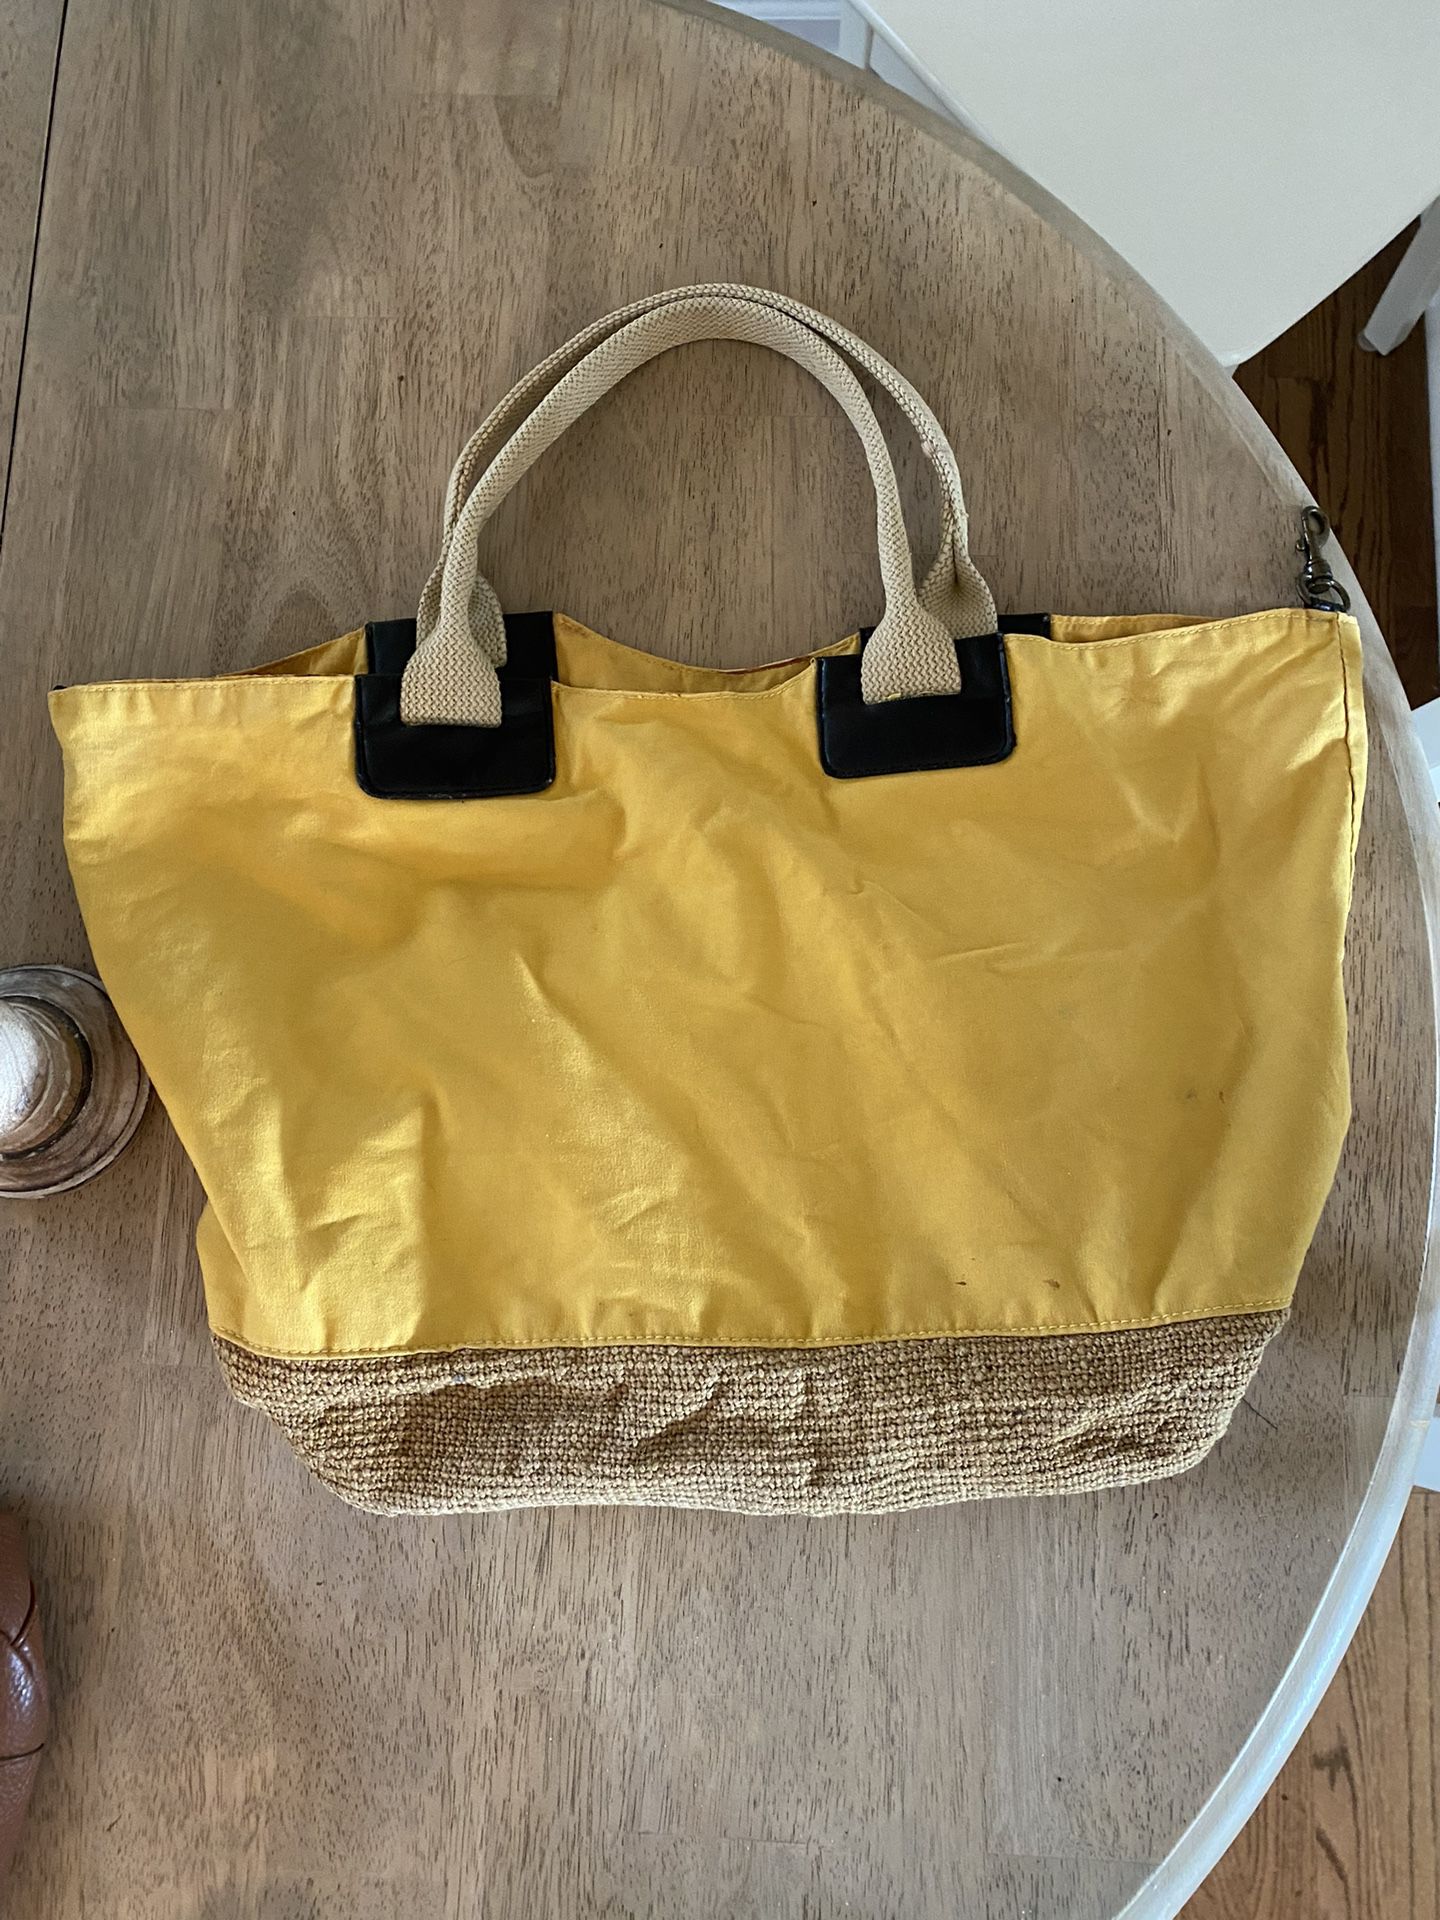 Large Tote Bag / Beach Bag